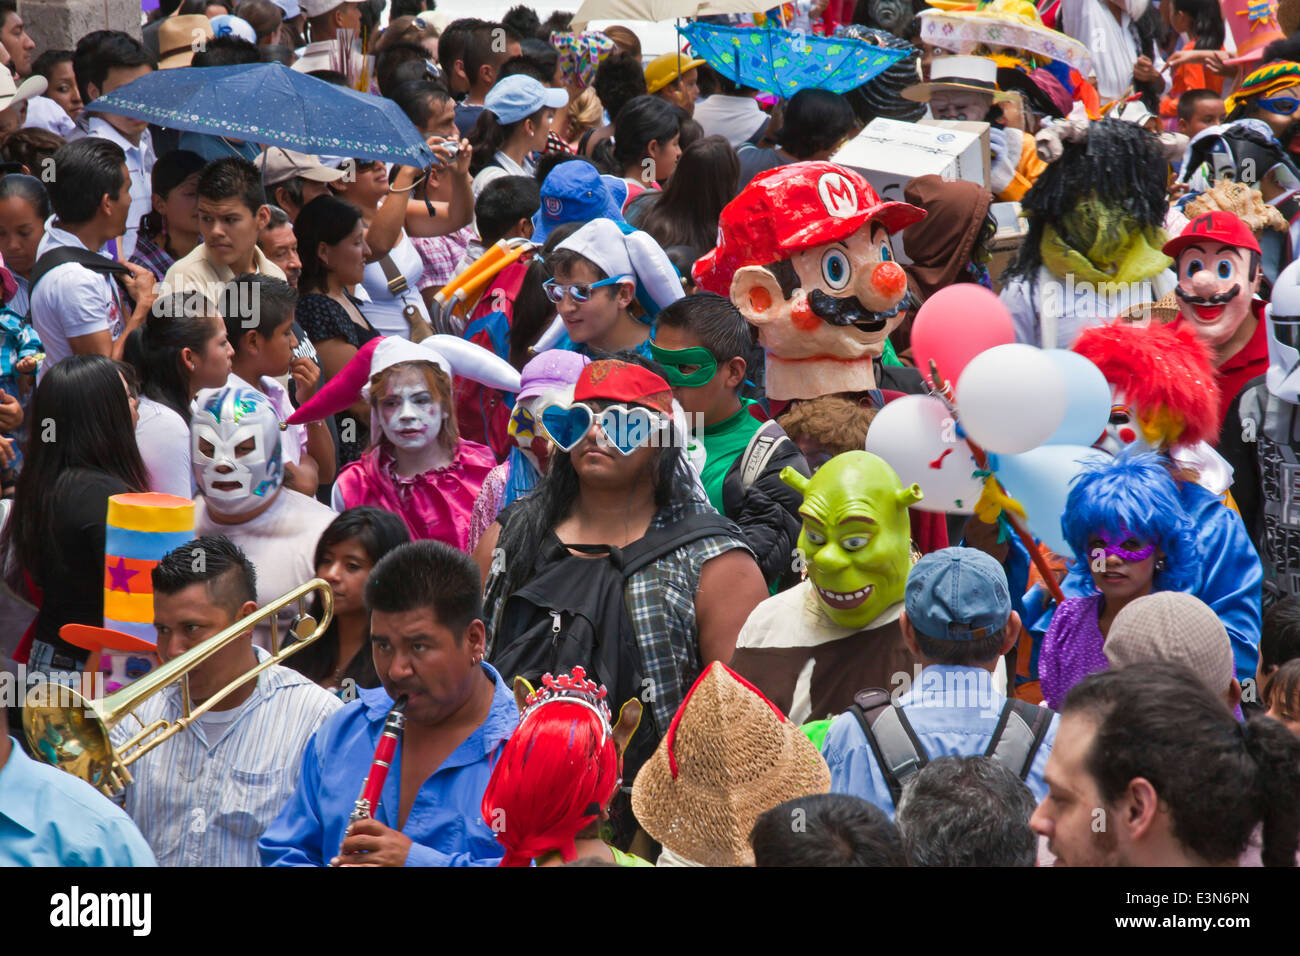 Mexicans dress in costumes and participate the DIA DE LOS LOCOS PARADE - SAN MIGUEL DE ALLENDE, GUANAJUATO, MEXICO Stock Photo